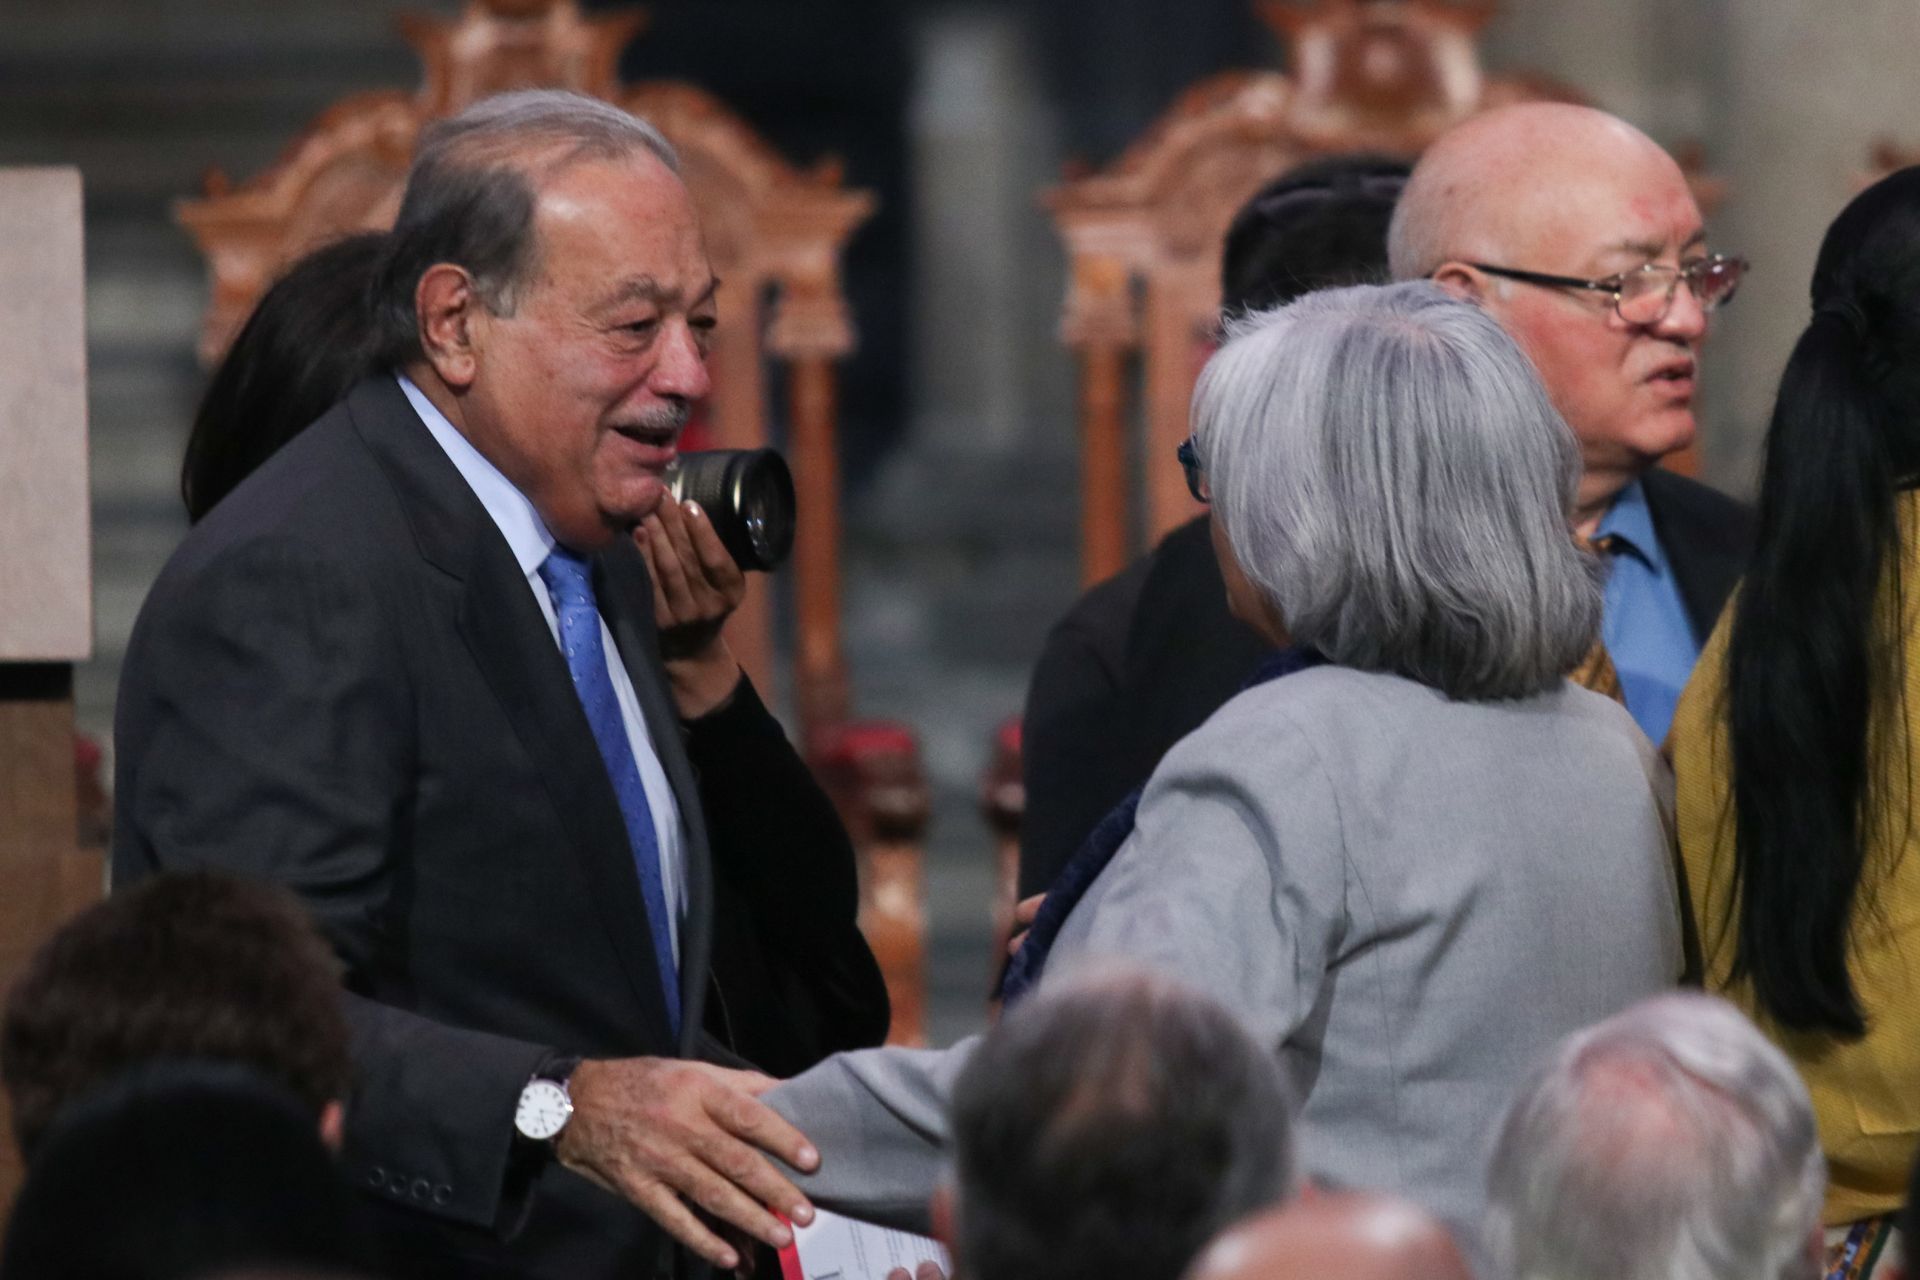 La fortuna de Carlos Slim disminuyó debido a la reforma en materia de telecomunicaciones aprobada en México en 2014 (Foto: Galo Cañas/ Cuartoscuro)